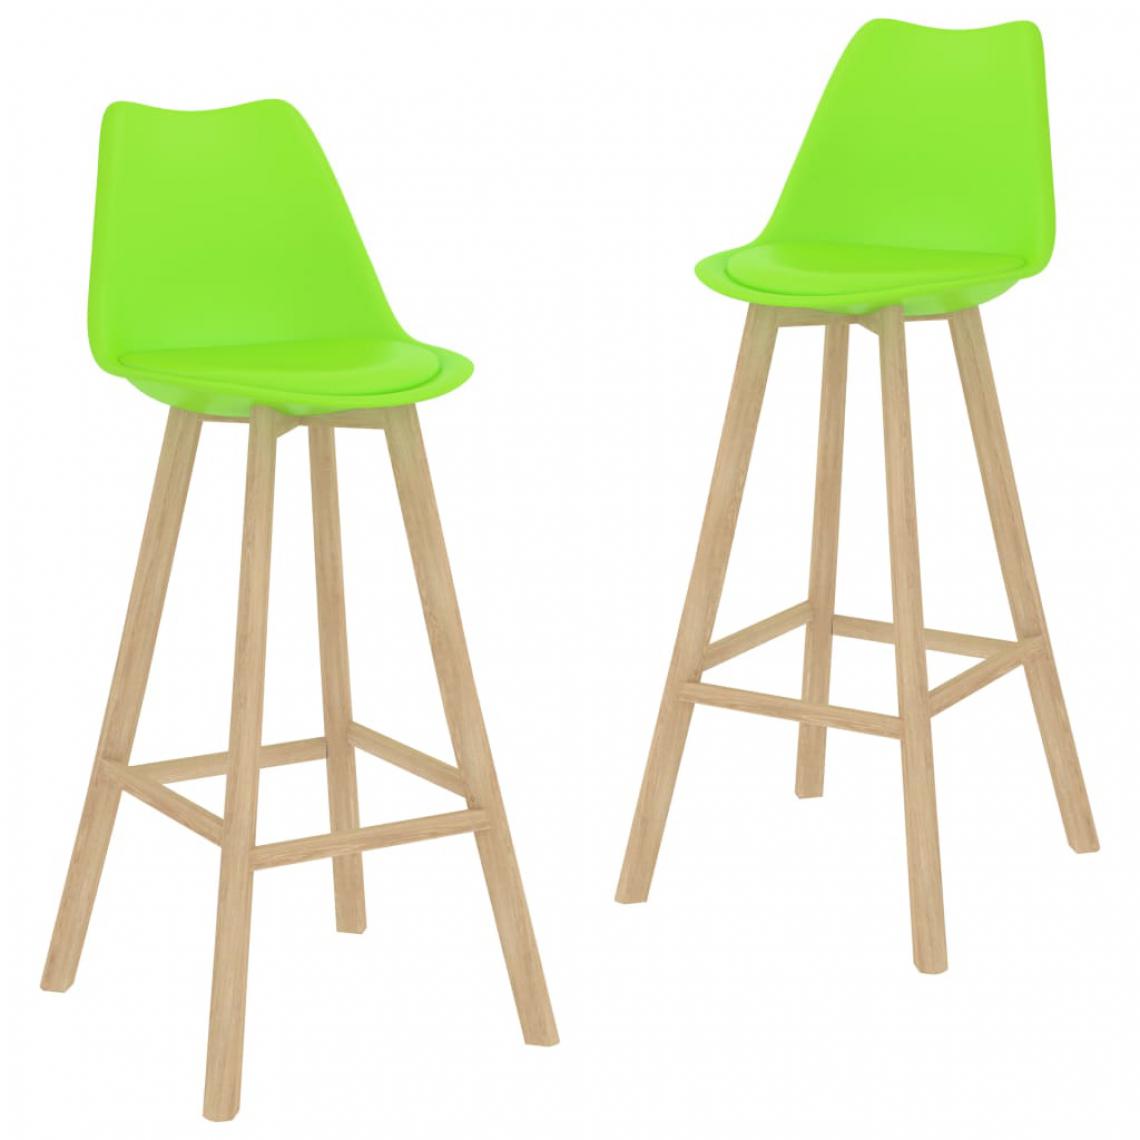 Icaverne - Splendide Fauteuils et chaises categorie Copenhague Tabourets de bar 2 pcs Vert Similicuir - Tabourets